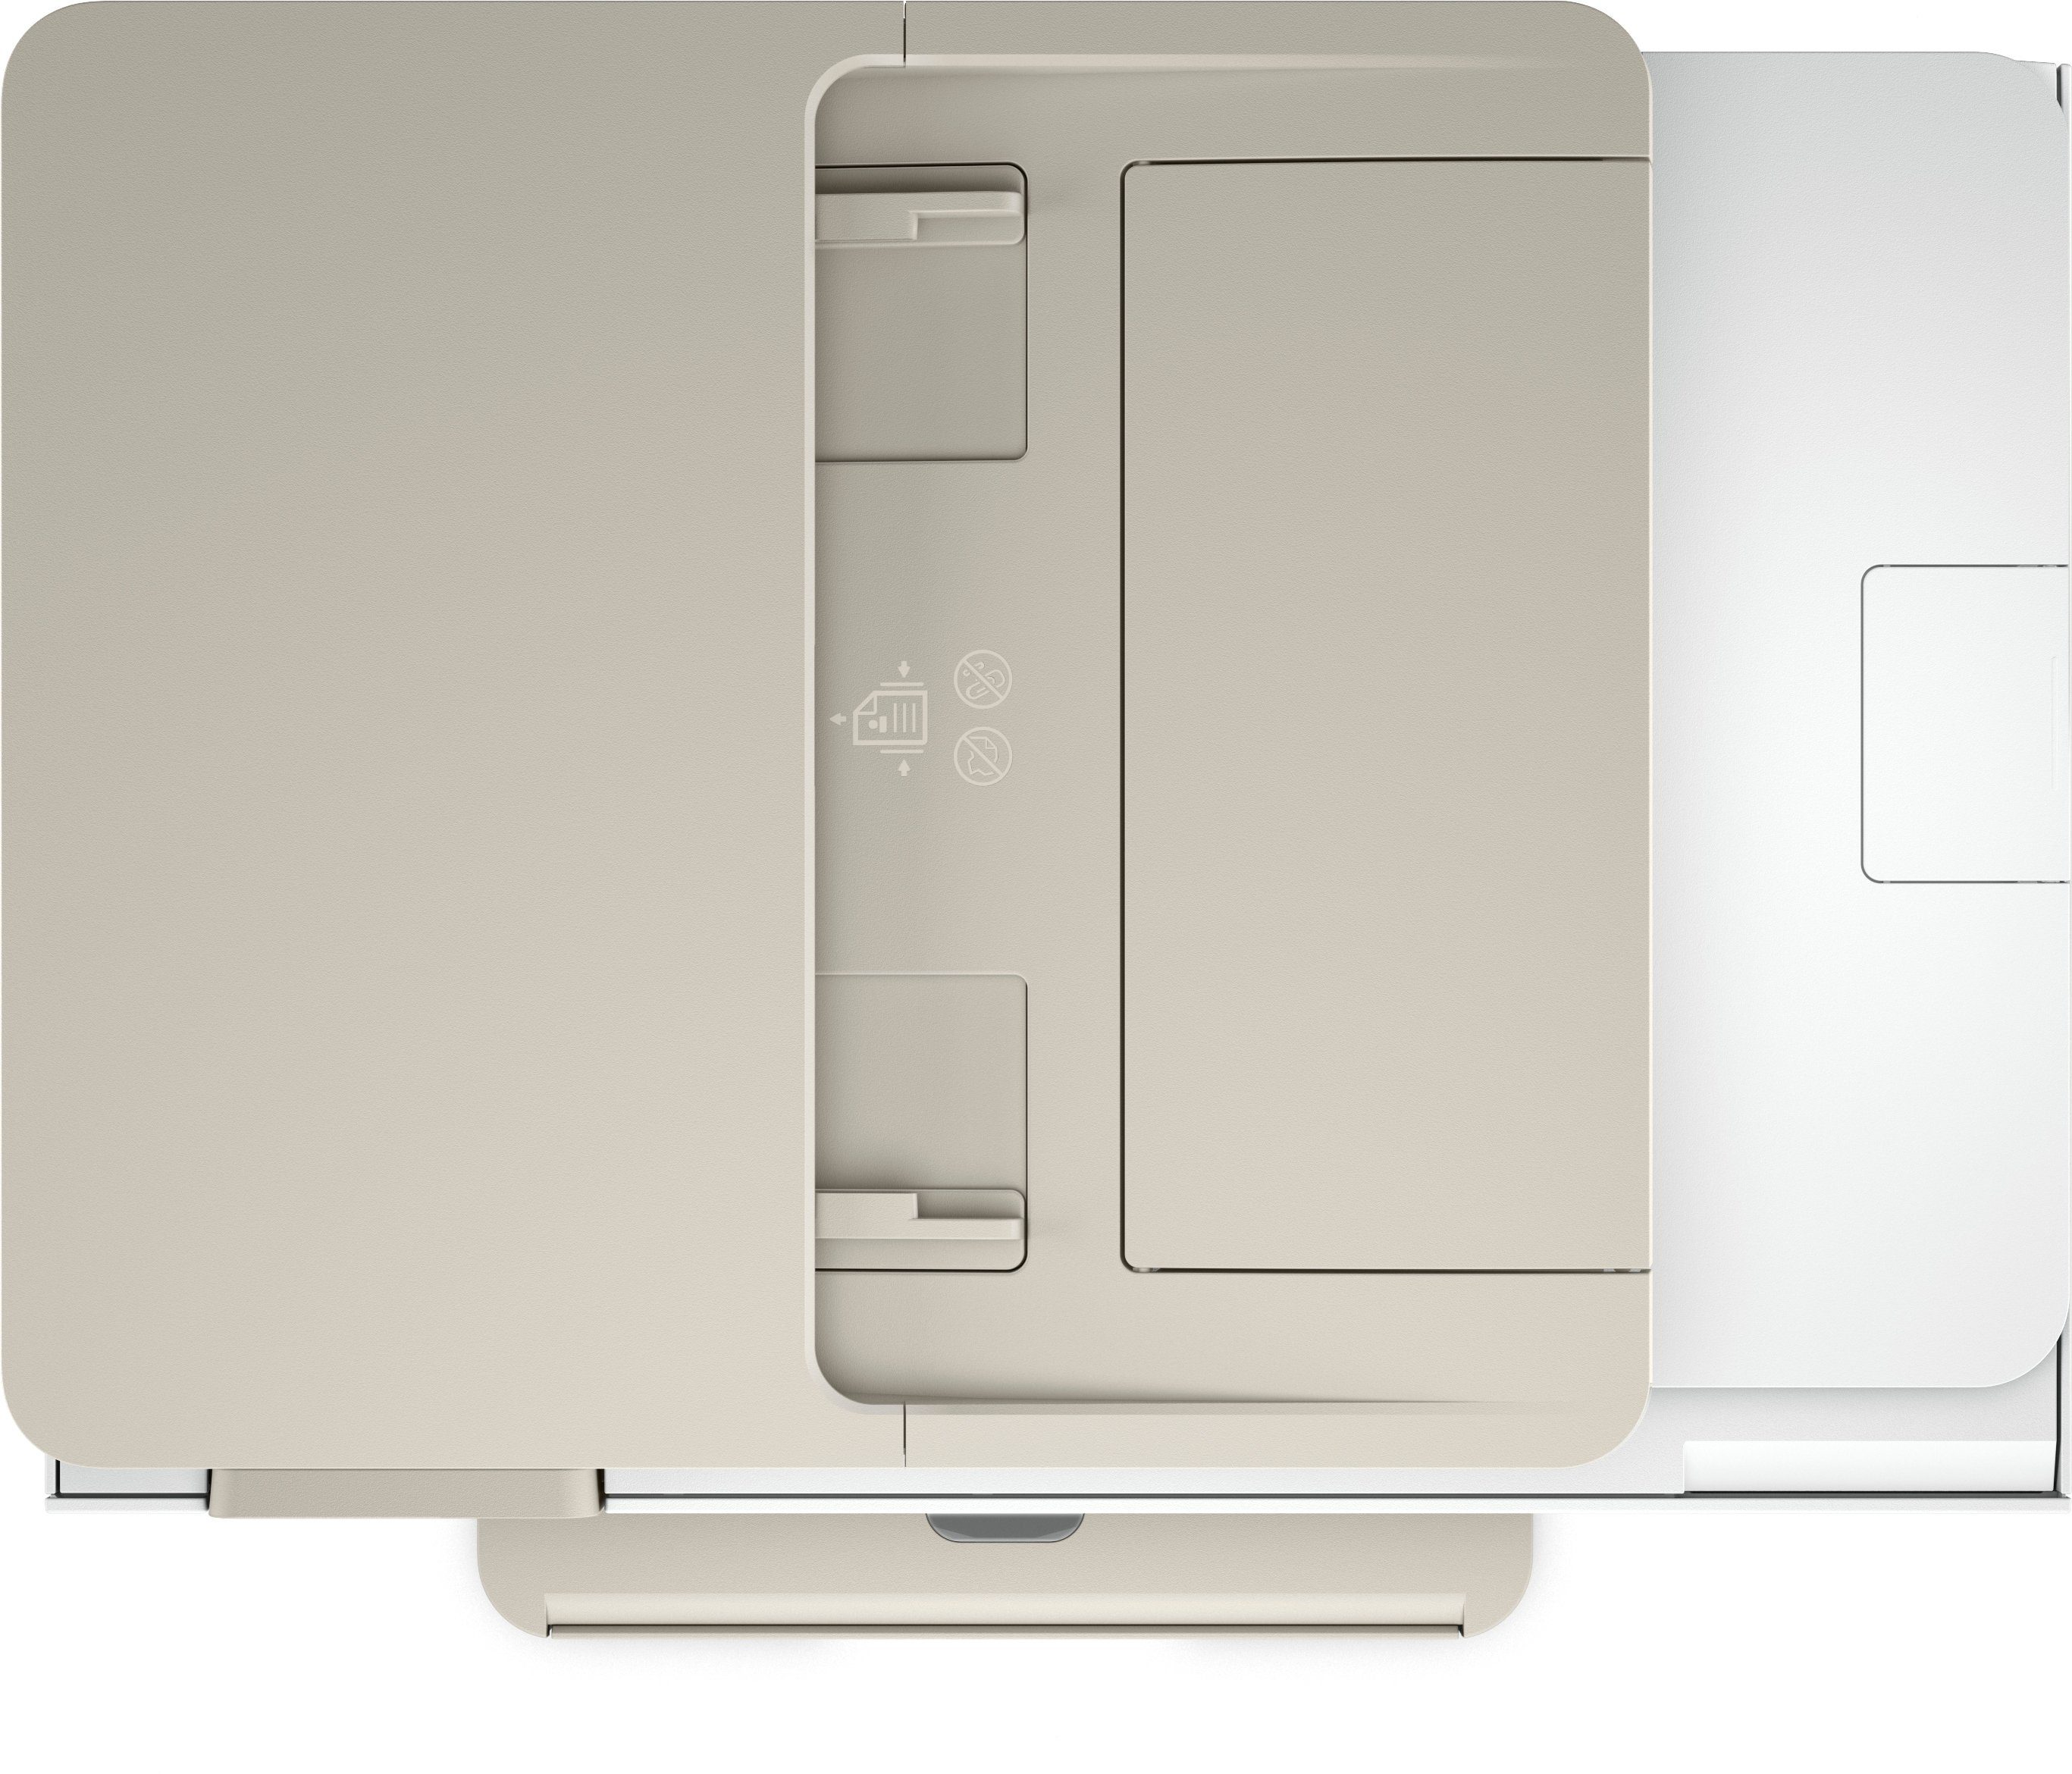 HP+ ENVY Instant Inspire kompatibel) All-in-One-Drucker (Wi-Fi), WLAN Ink HP Multifunktionsdrucker, (Bluetooth, 7920e